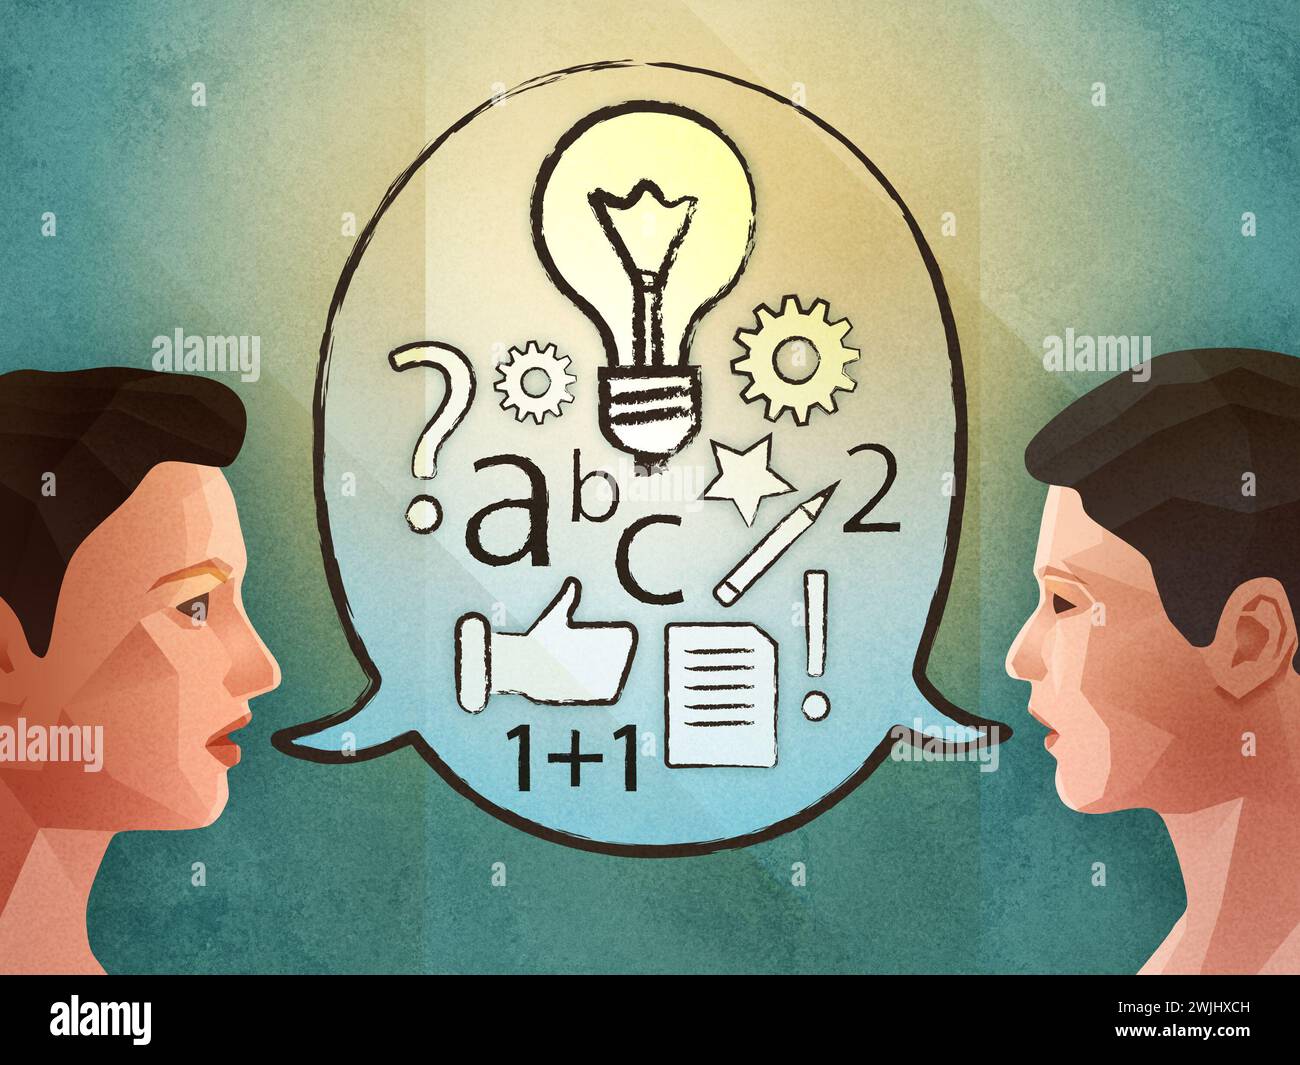 Deux personnes réfléchissent et trouvent de nouvelles idées. Illustration numérique. Banque D'Images